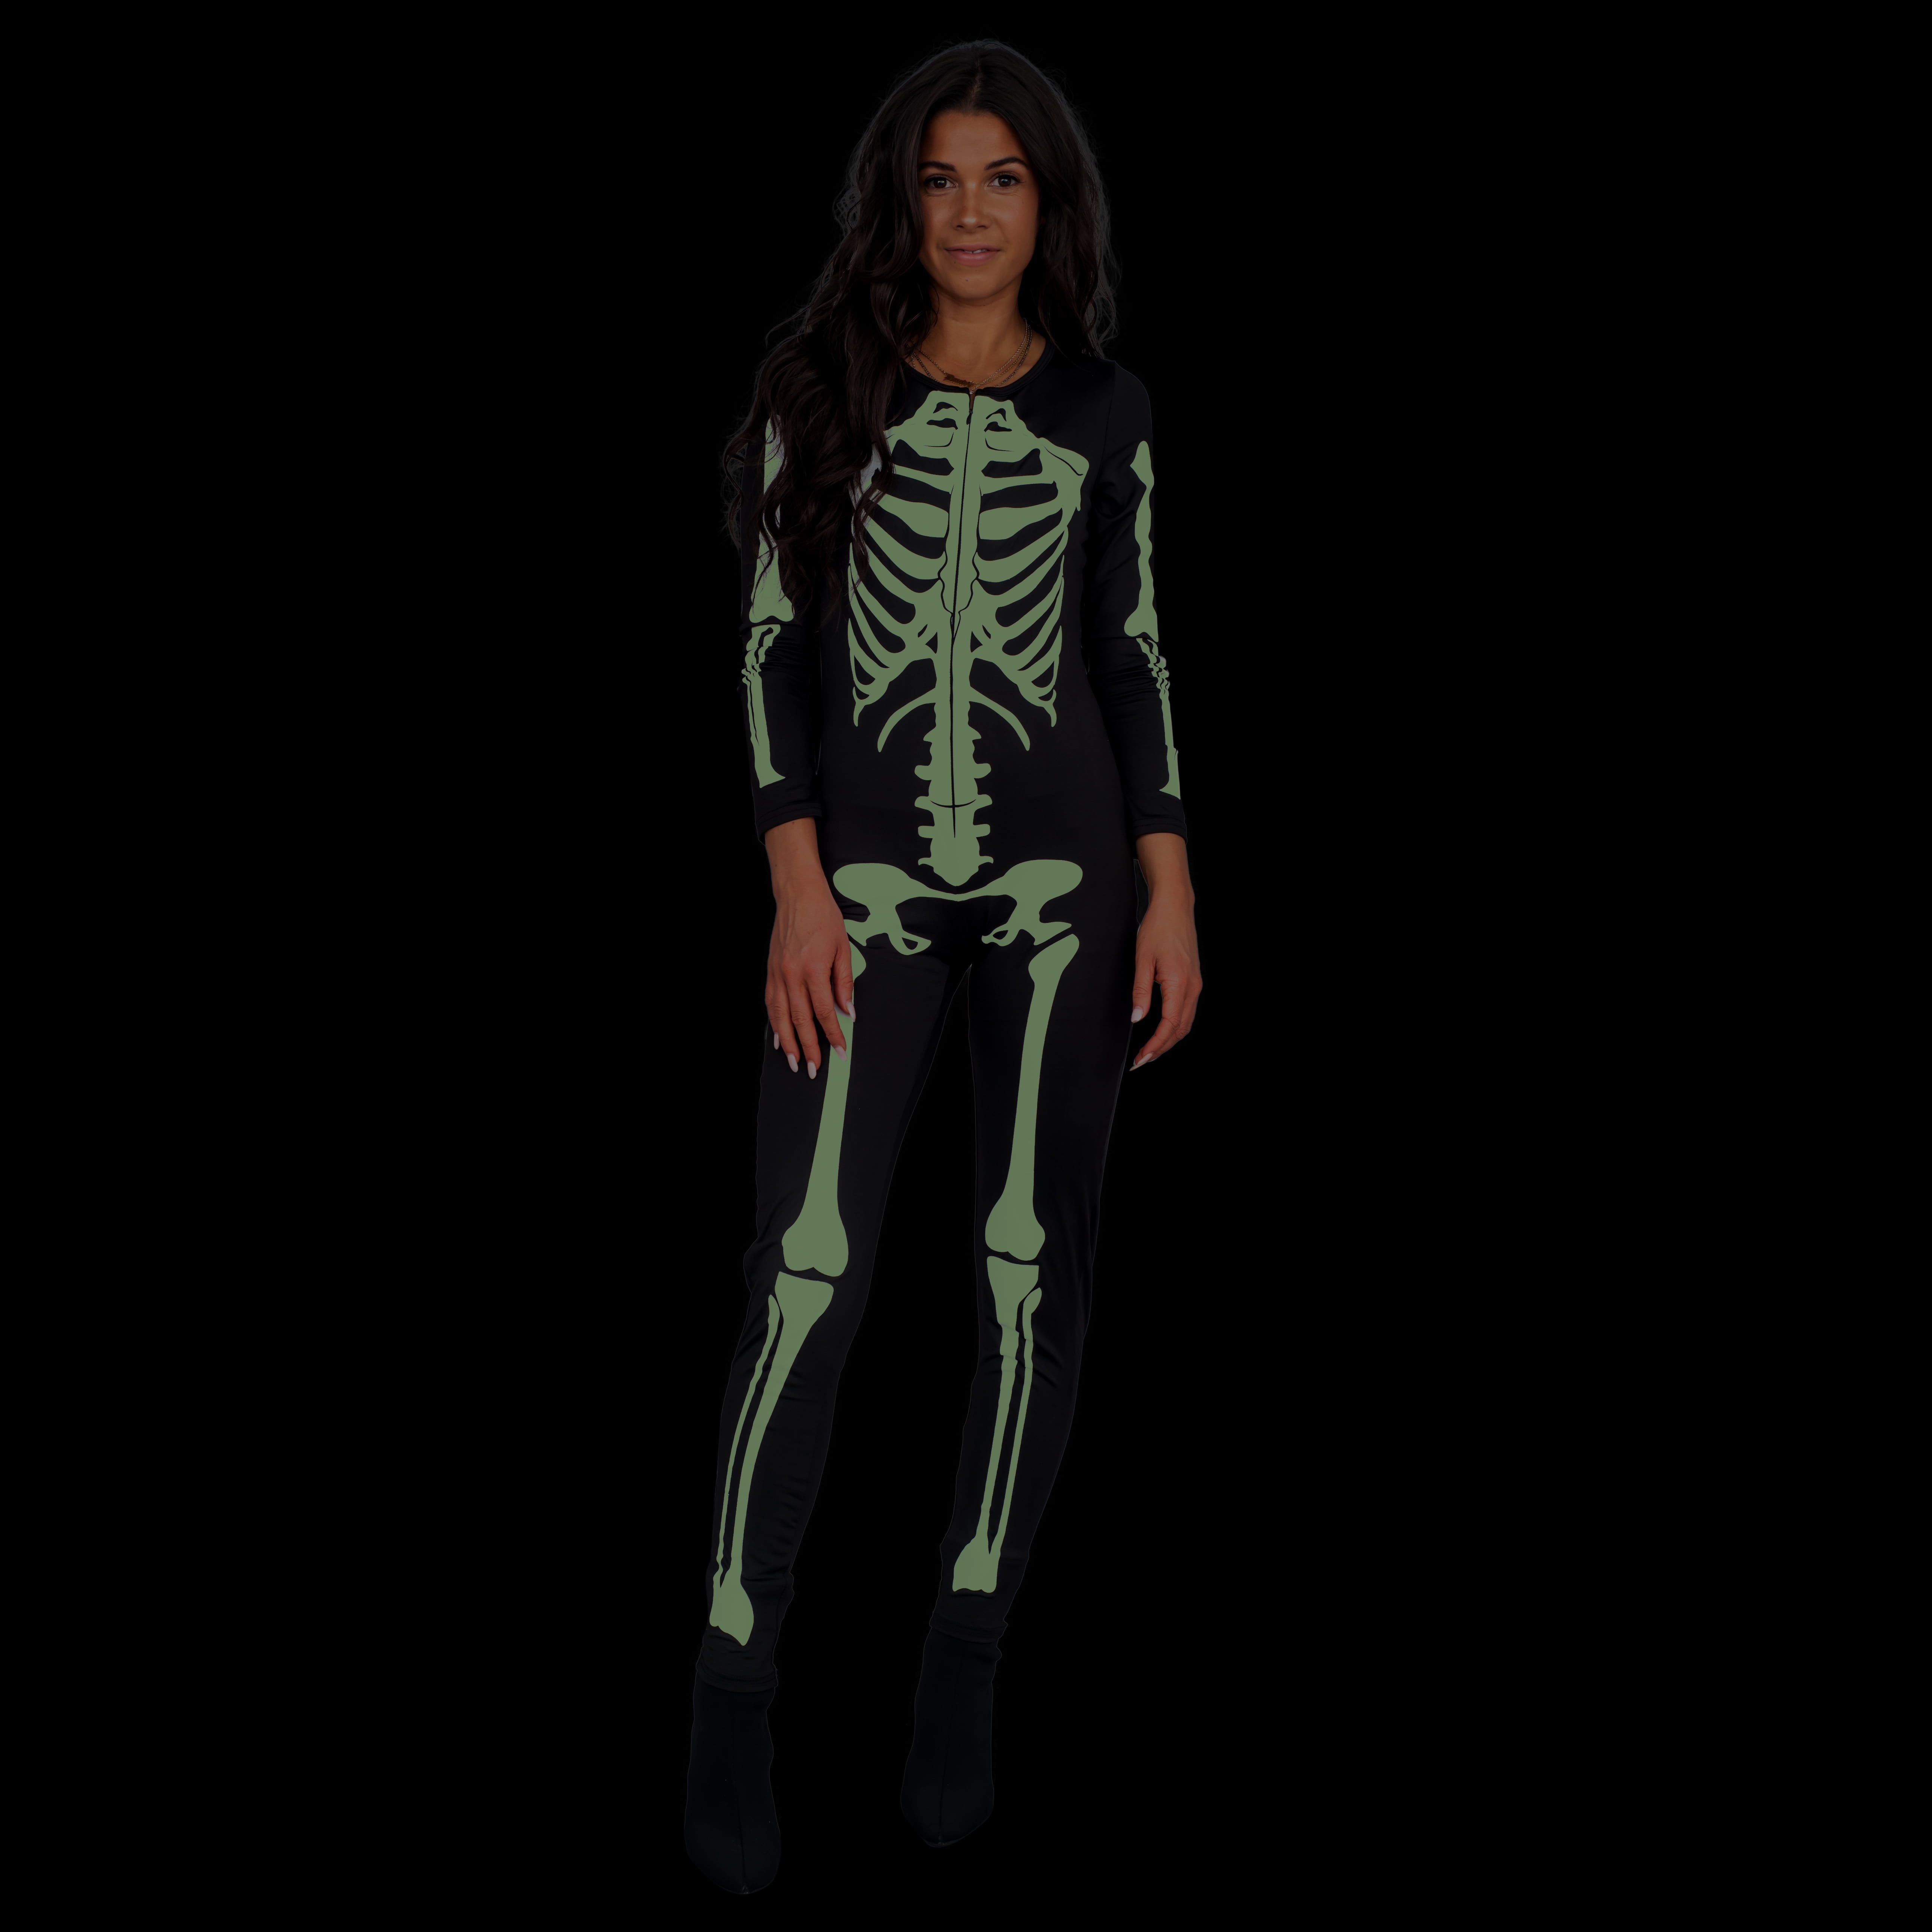 Skeleton Costume Jumpsuit Women's Halloween Costume in the Dark Cosplay -